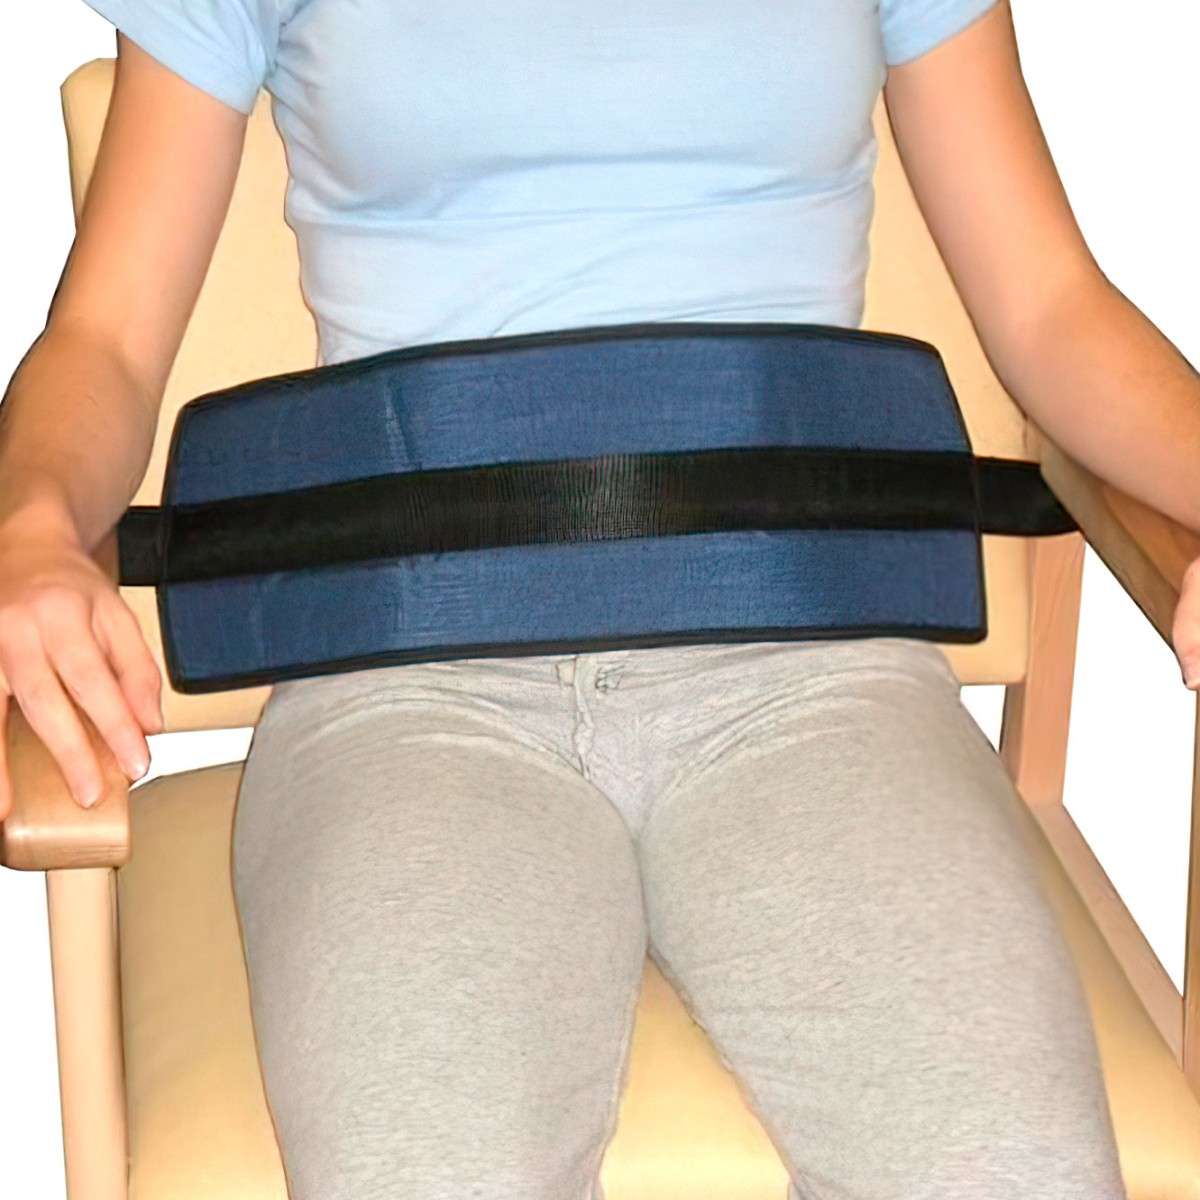 Cinturón abdominal silla ruedas o sillón